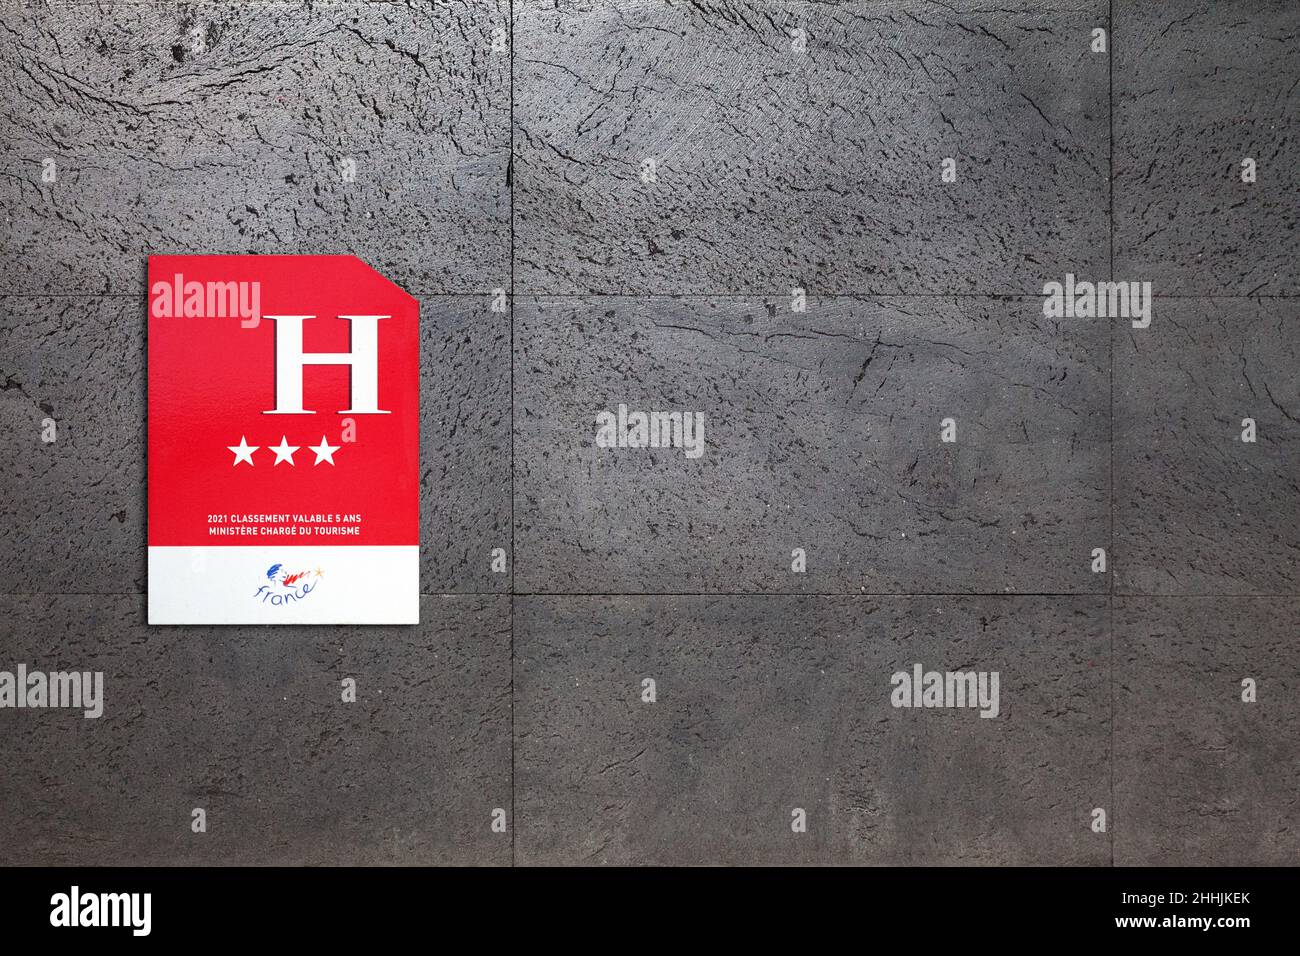 Paris, France - janvier 2022 : panneau extérieur indiquant le nombre d'étoiles d'un hôtel (valable 5 ans).Cette classification, qui ne concerne que campin Banque D'Images